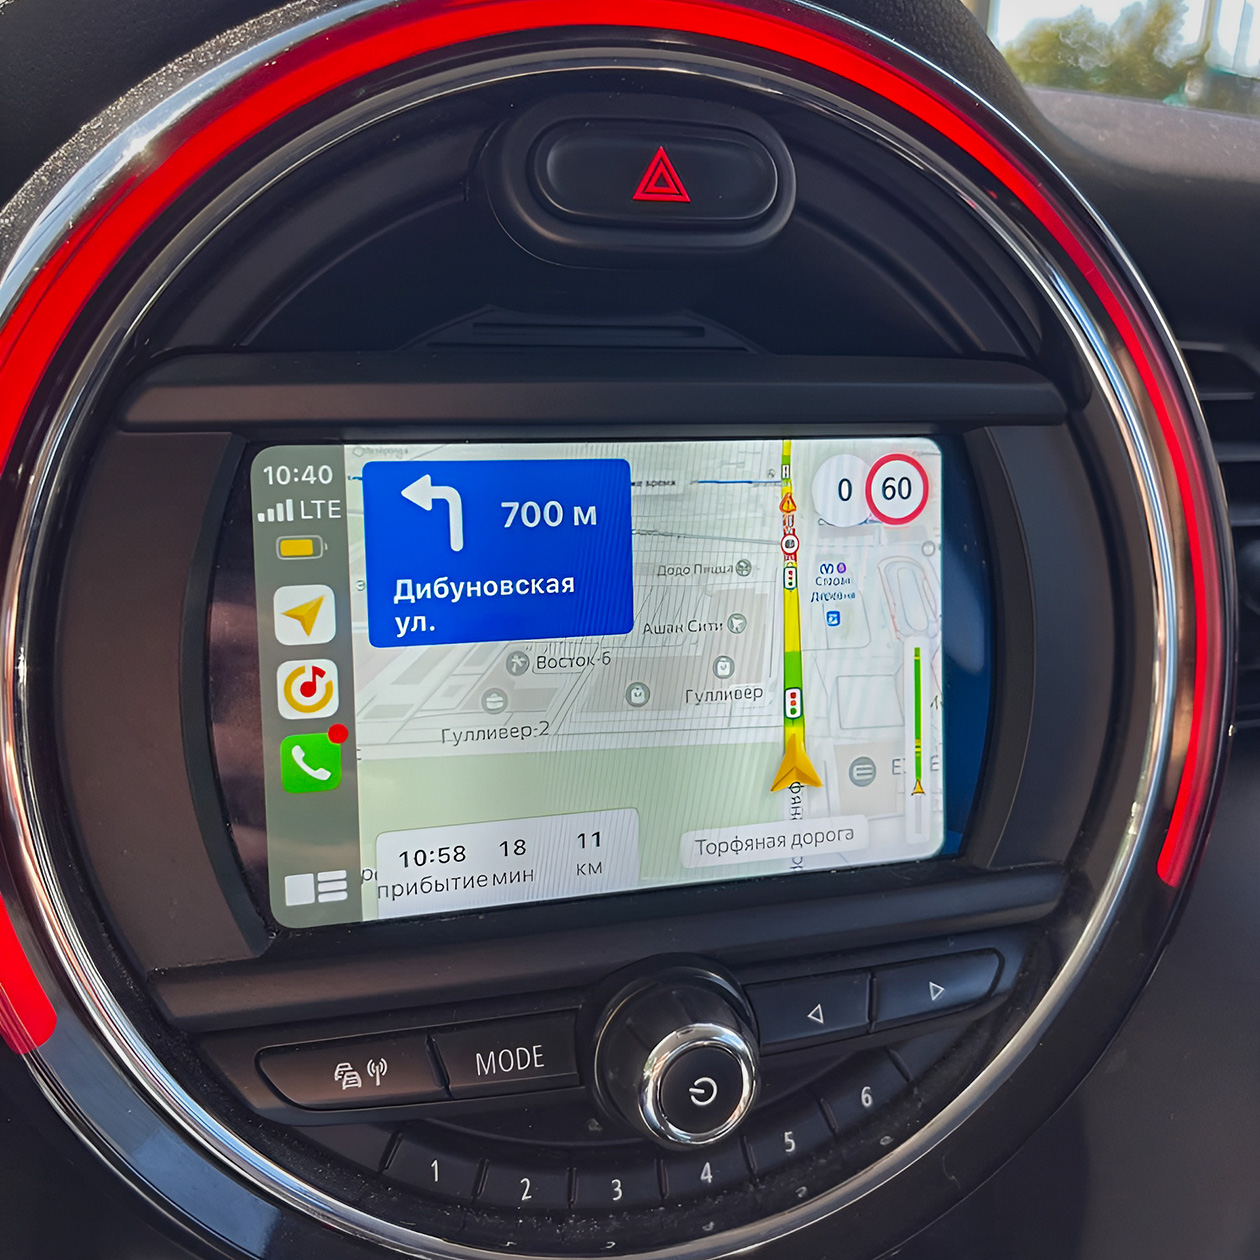 Разрешенная скорость в «Яндекс Навигаторе» отображается как настоящий дорожный знак в правом верхнем углу. Справа в белом круге указана реальная скорость движения. Спидометр автомобиля обычно менее точен